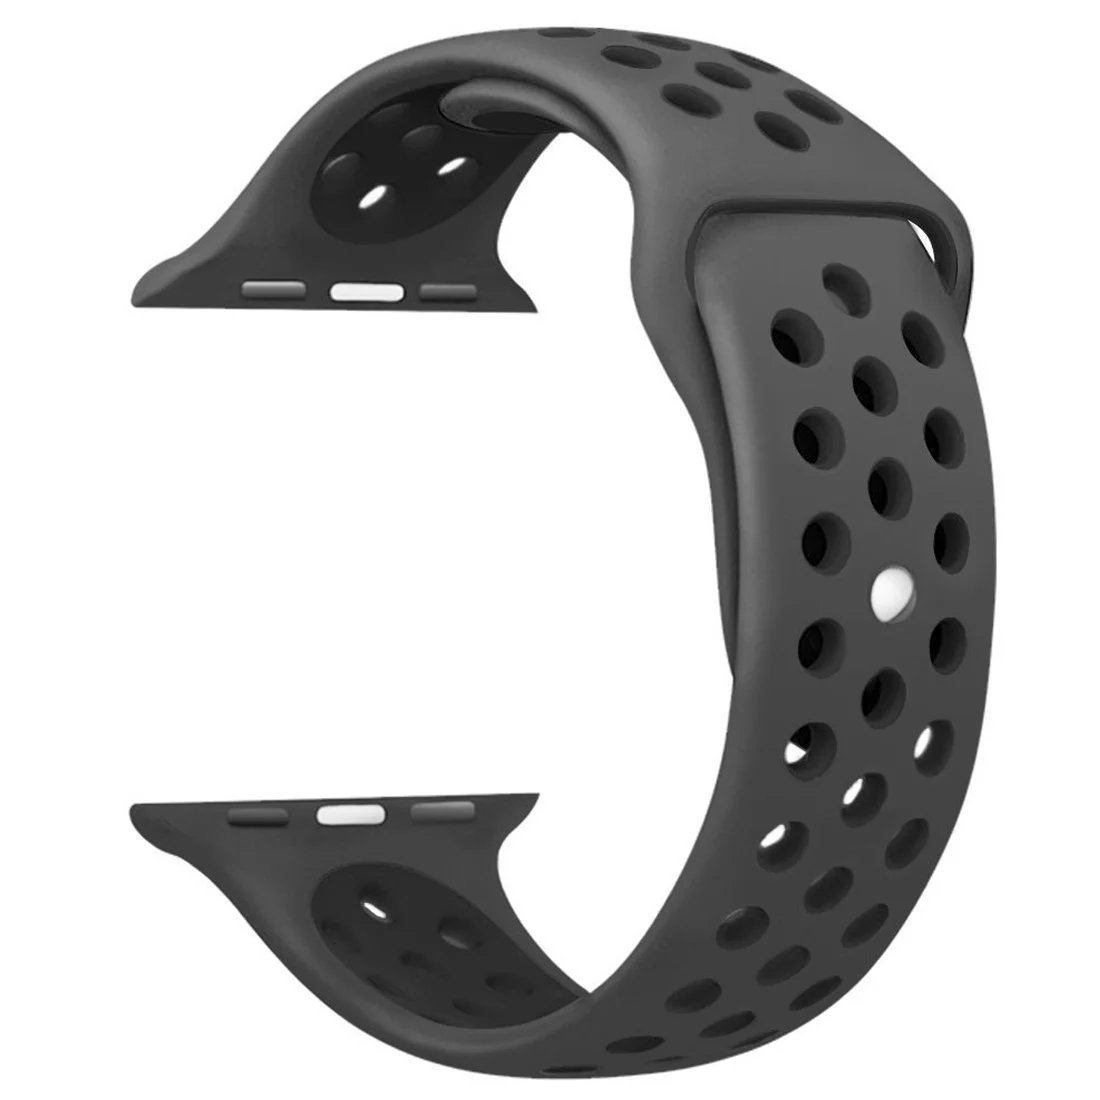 Řemínek iMore SPORT pro Apple Watch Series 4/5/6/SE (40mm) - Antracitový/Černý